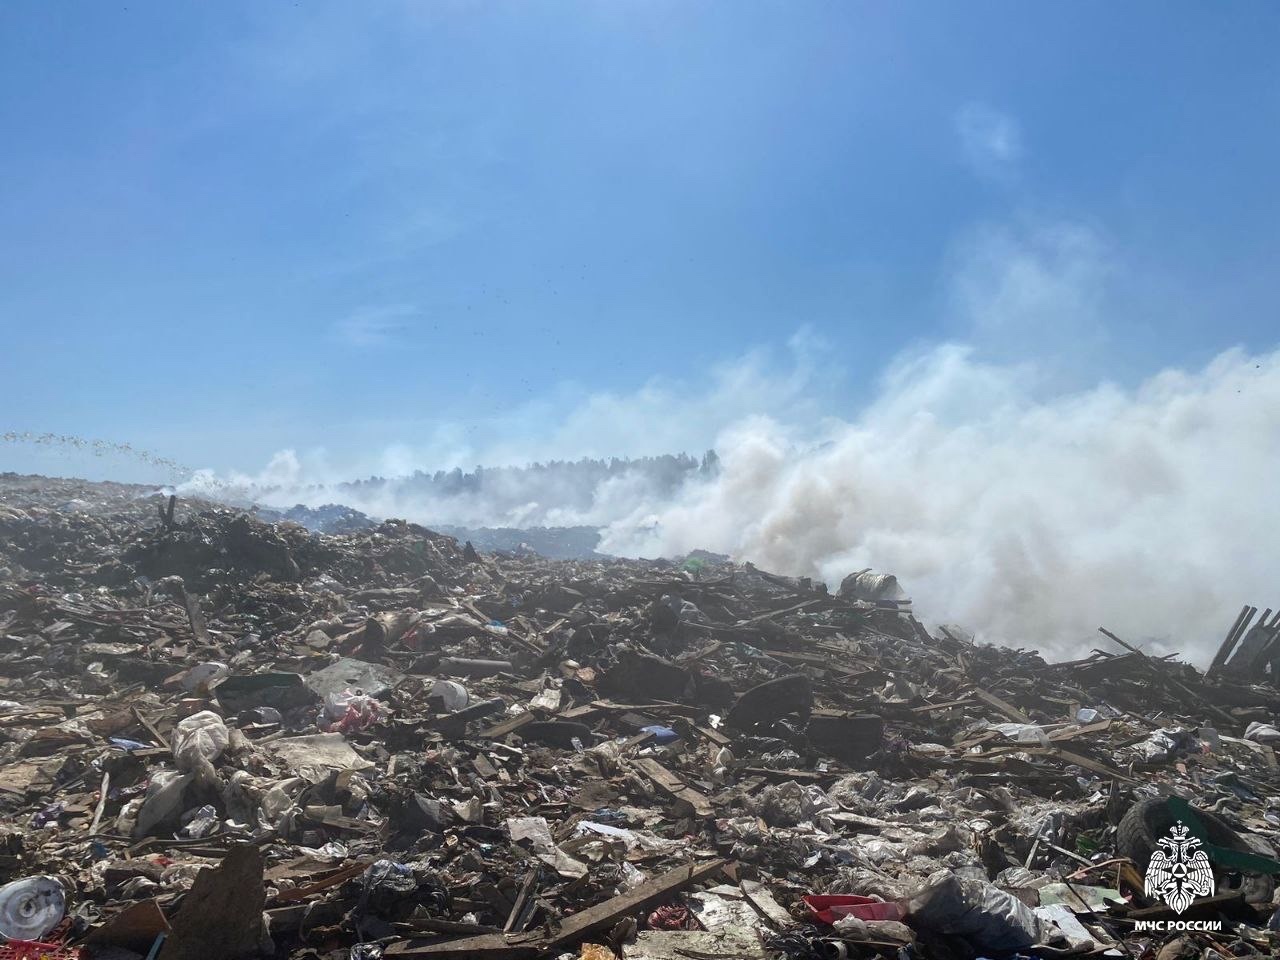 МЧС Карелии опубликовало кадры тлеющего мусорного полигона под Петрозаводском